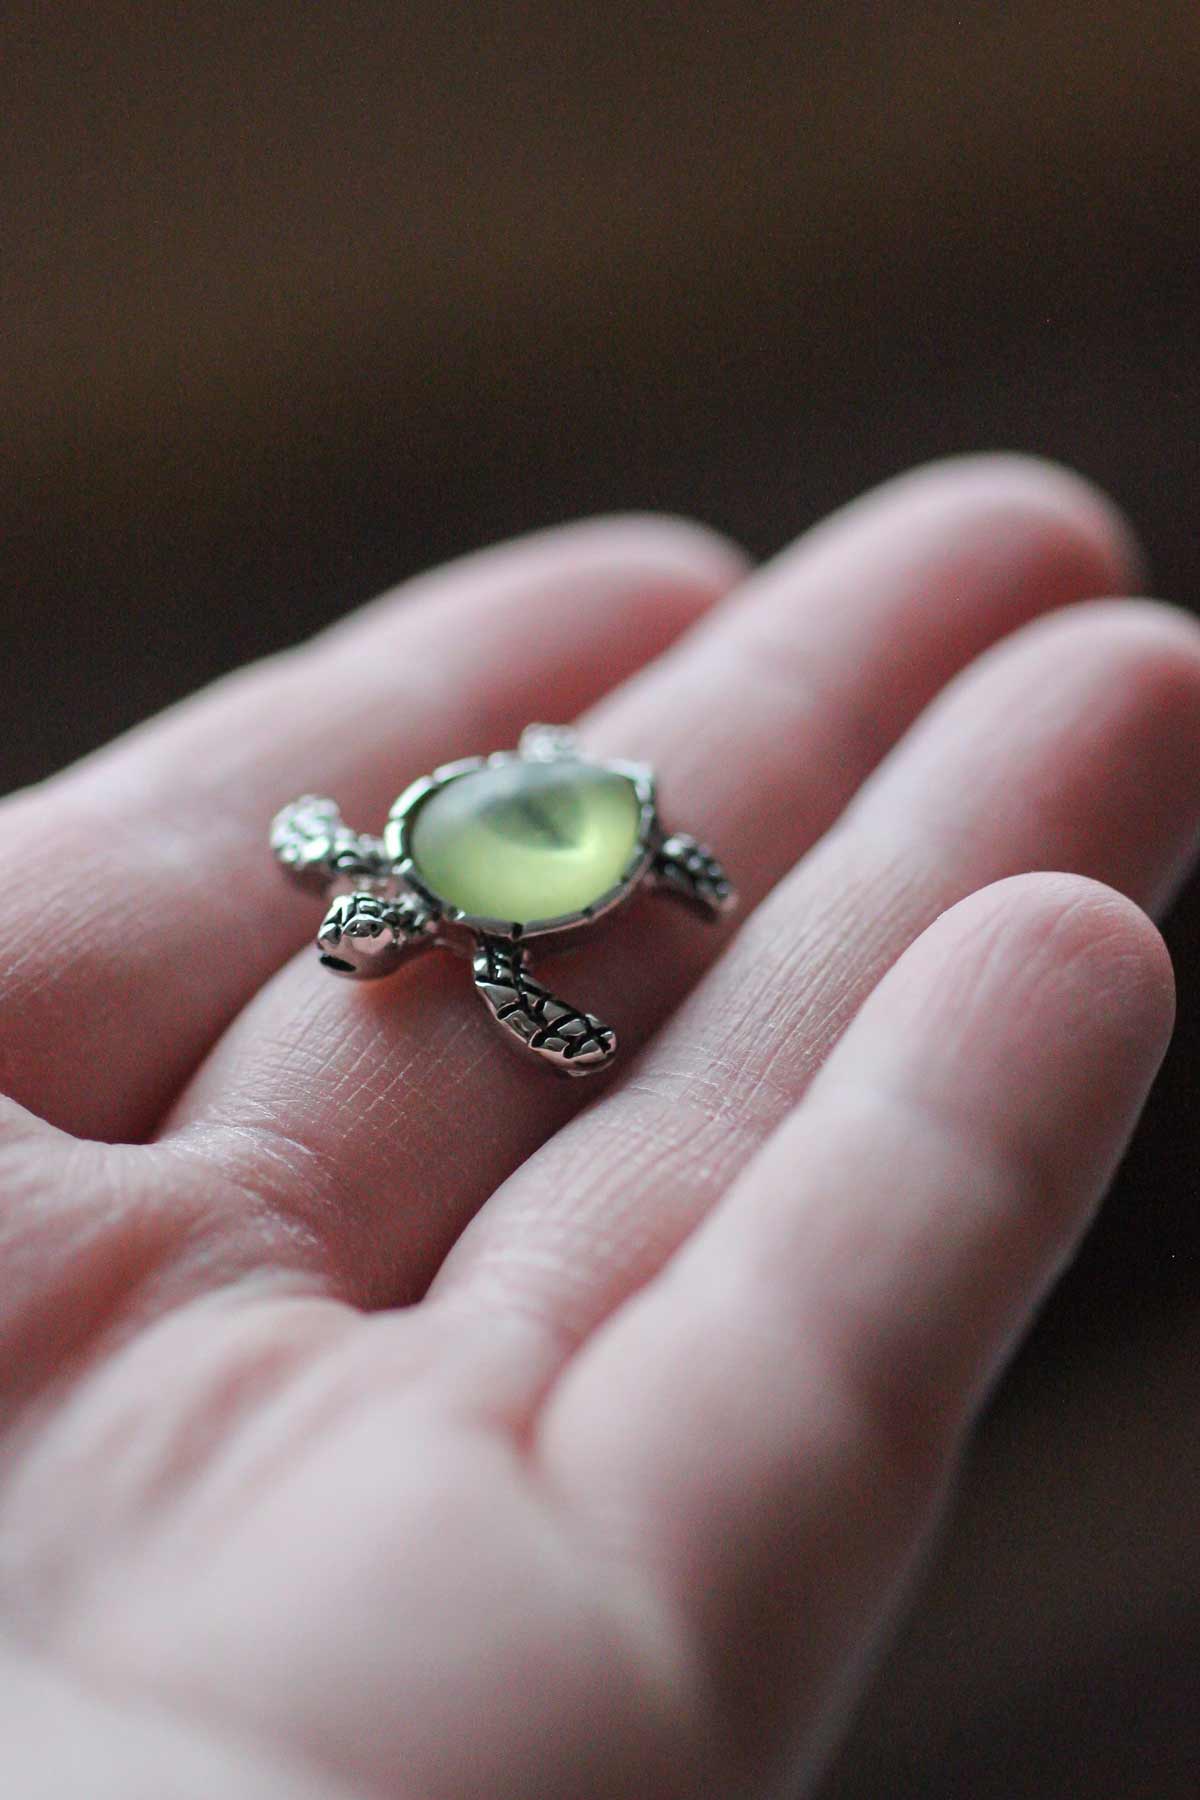 Kachua Ring is Symbol of Love Will Open the Way to Prosperity Know Turtle  Ring Benefits | कछुए की अंगूठी प्यार का प्रतीक, खुलेगा समृद्धि का रास्ता,  जानें फायदे | Hindi News, पटना